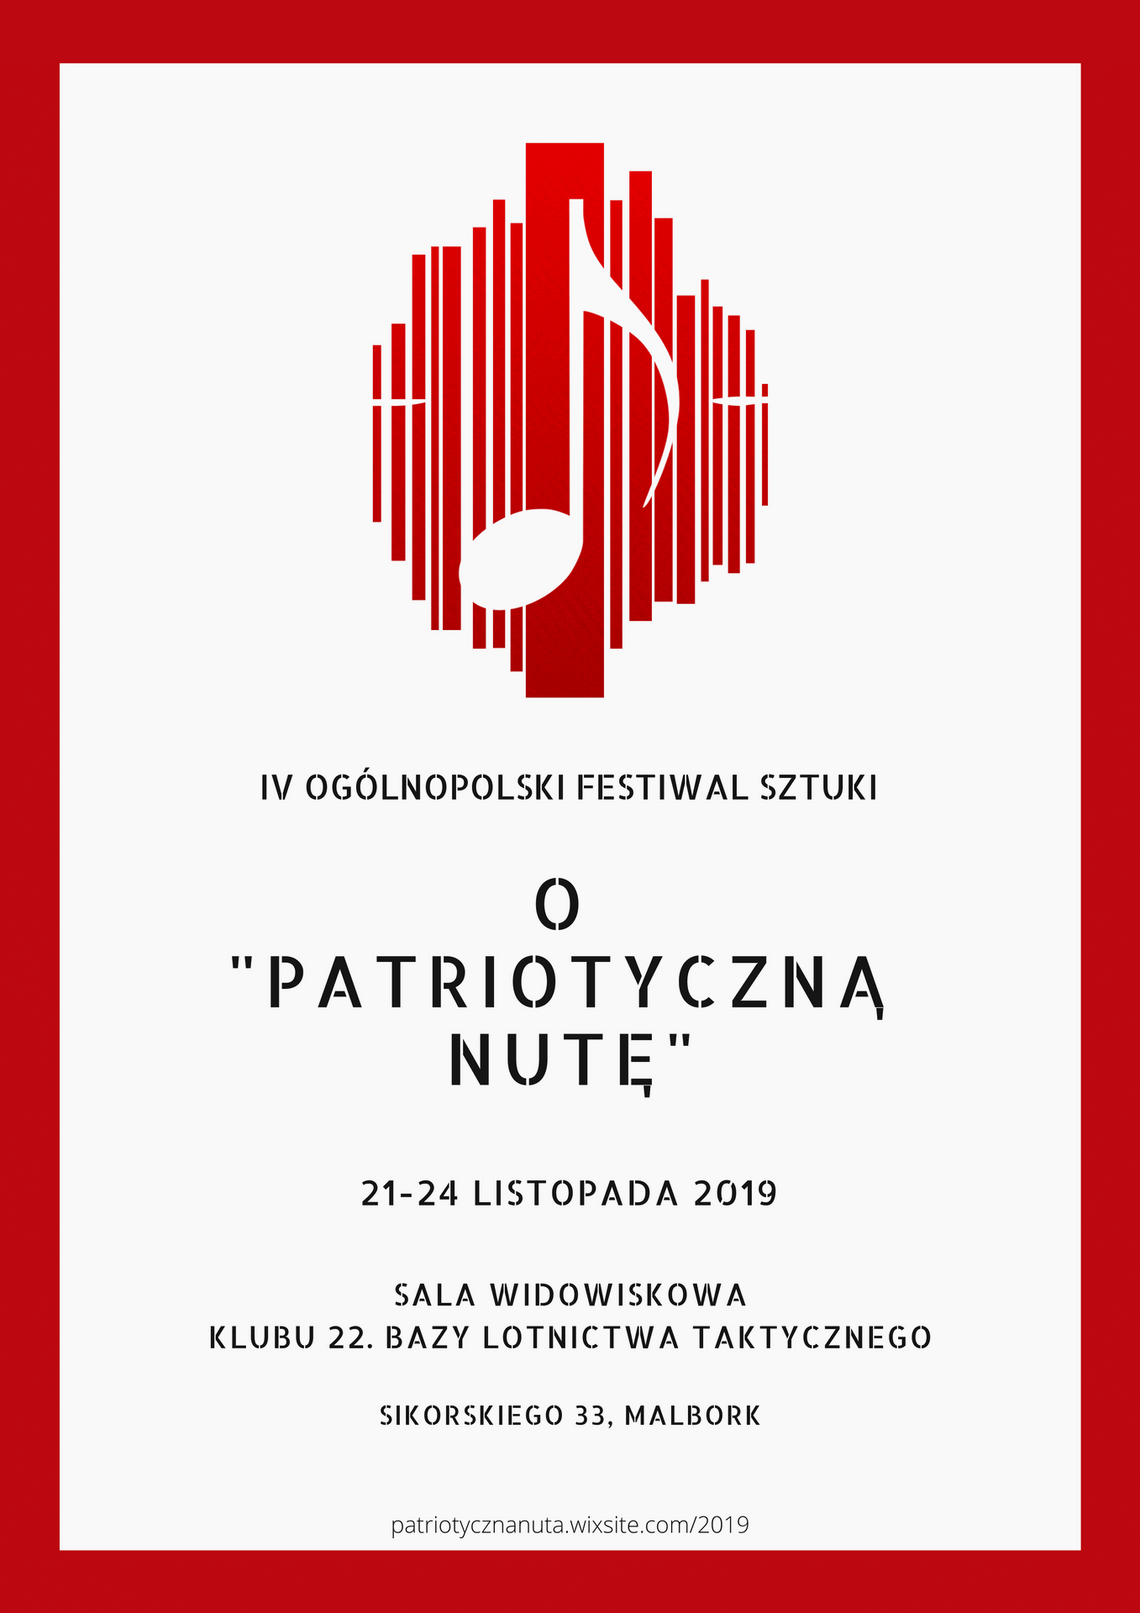 IV Ogólnopolski Festiwal Sztuki o "Patriotyczną Nutę"